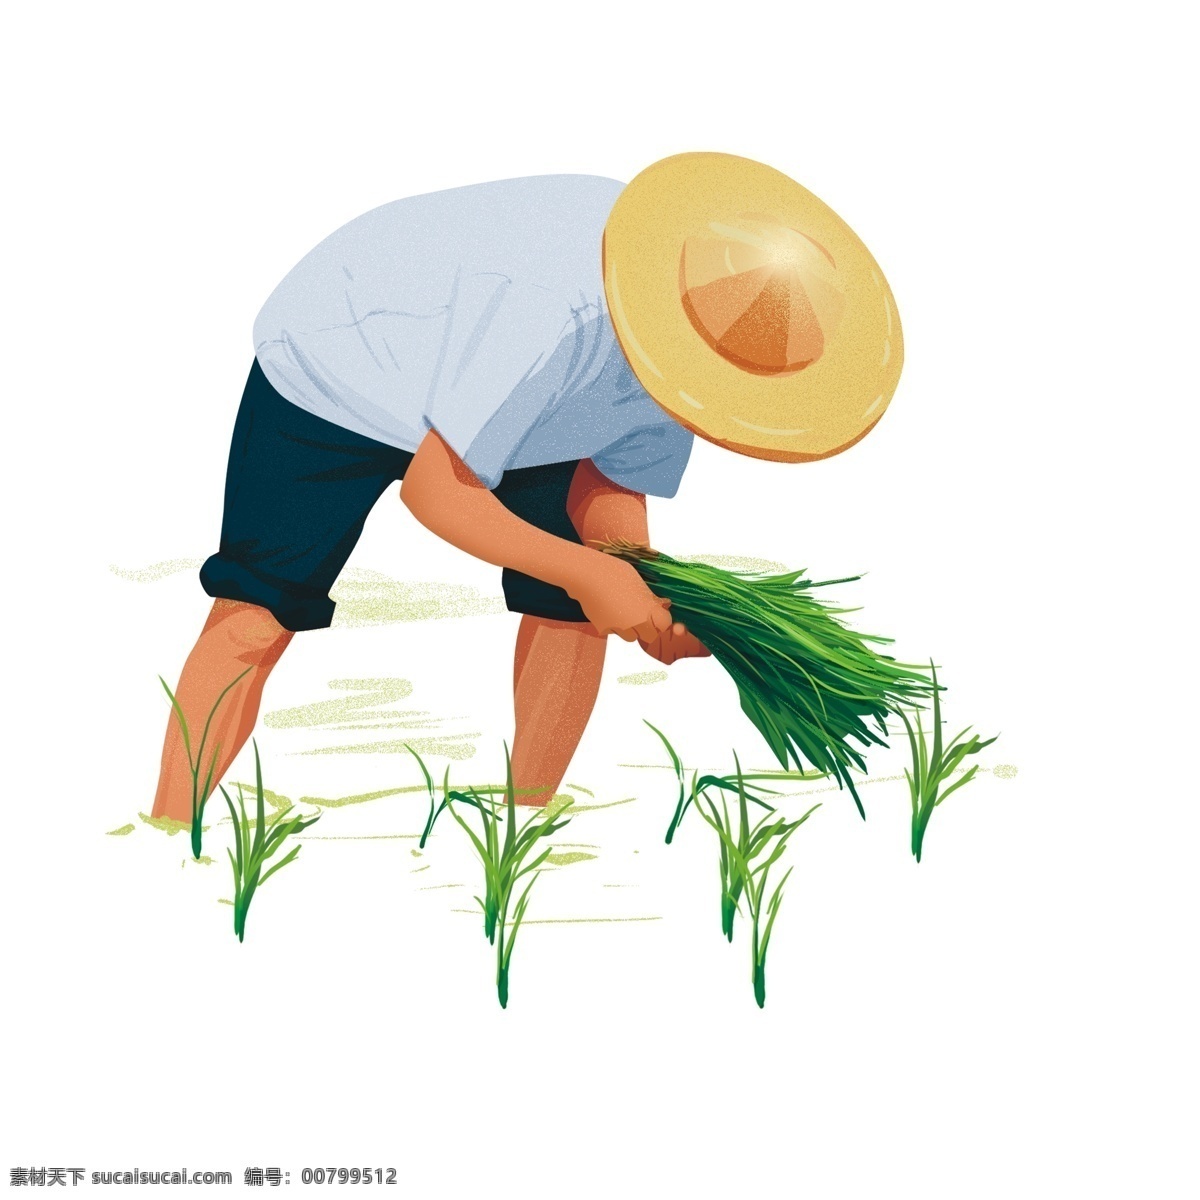 插秧 农民 装饰 元素 装饰元素 手绘 草帽 水稻 植物 稻田